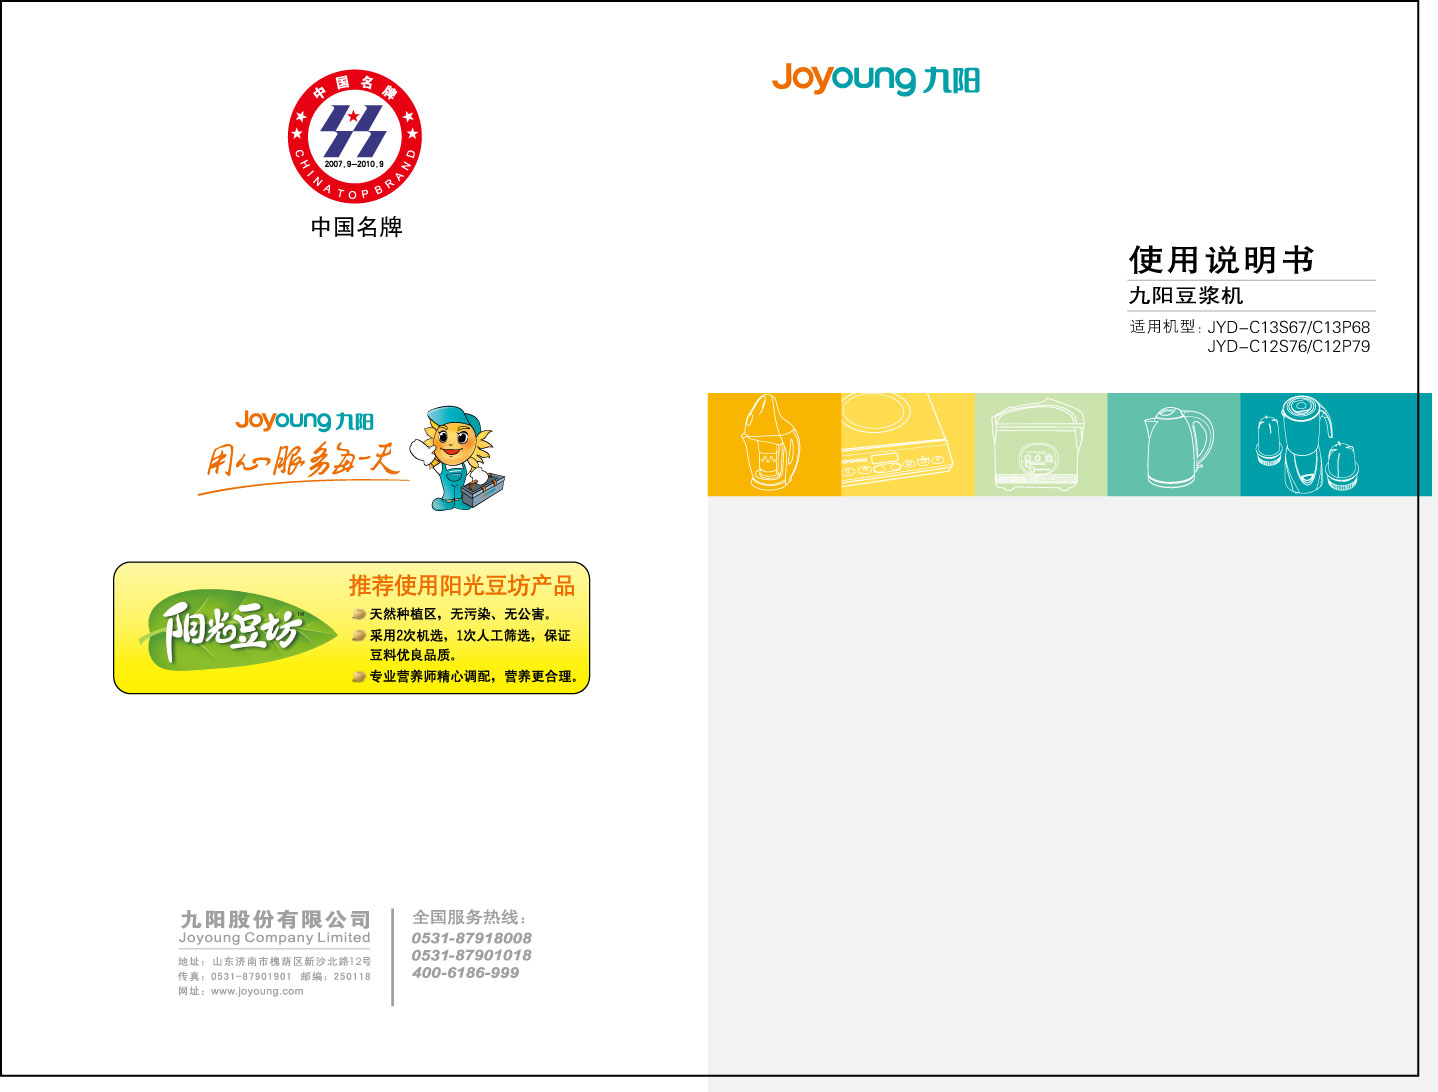 九阳 Joyyoung JYD-C12P79 使用说明书 封面